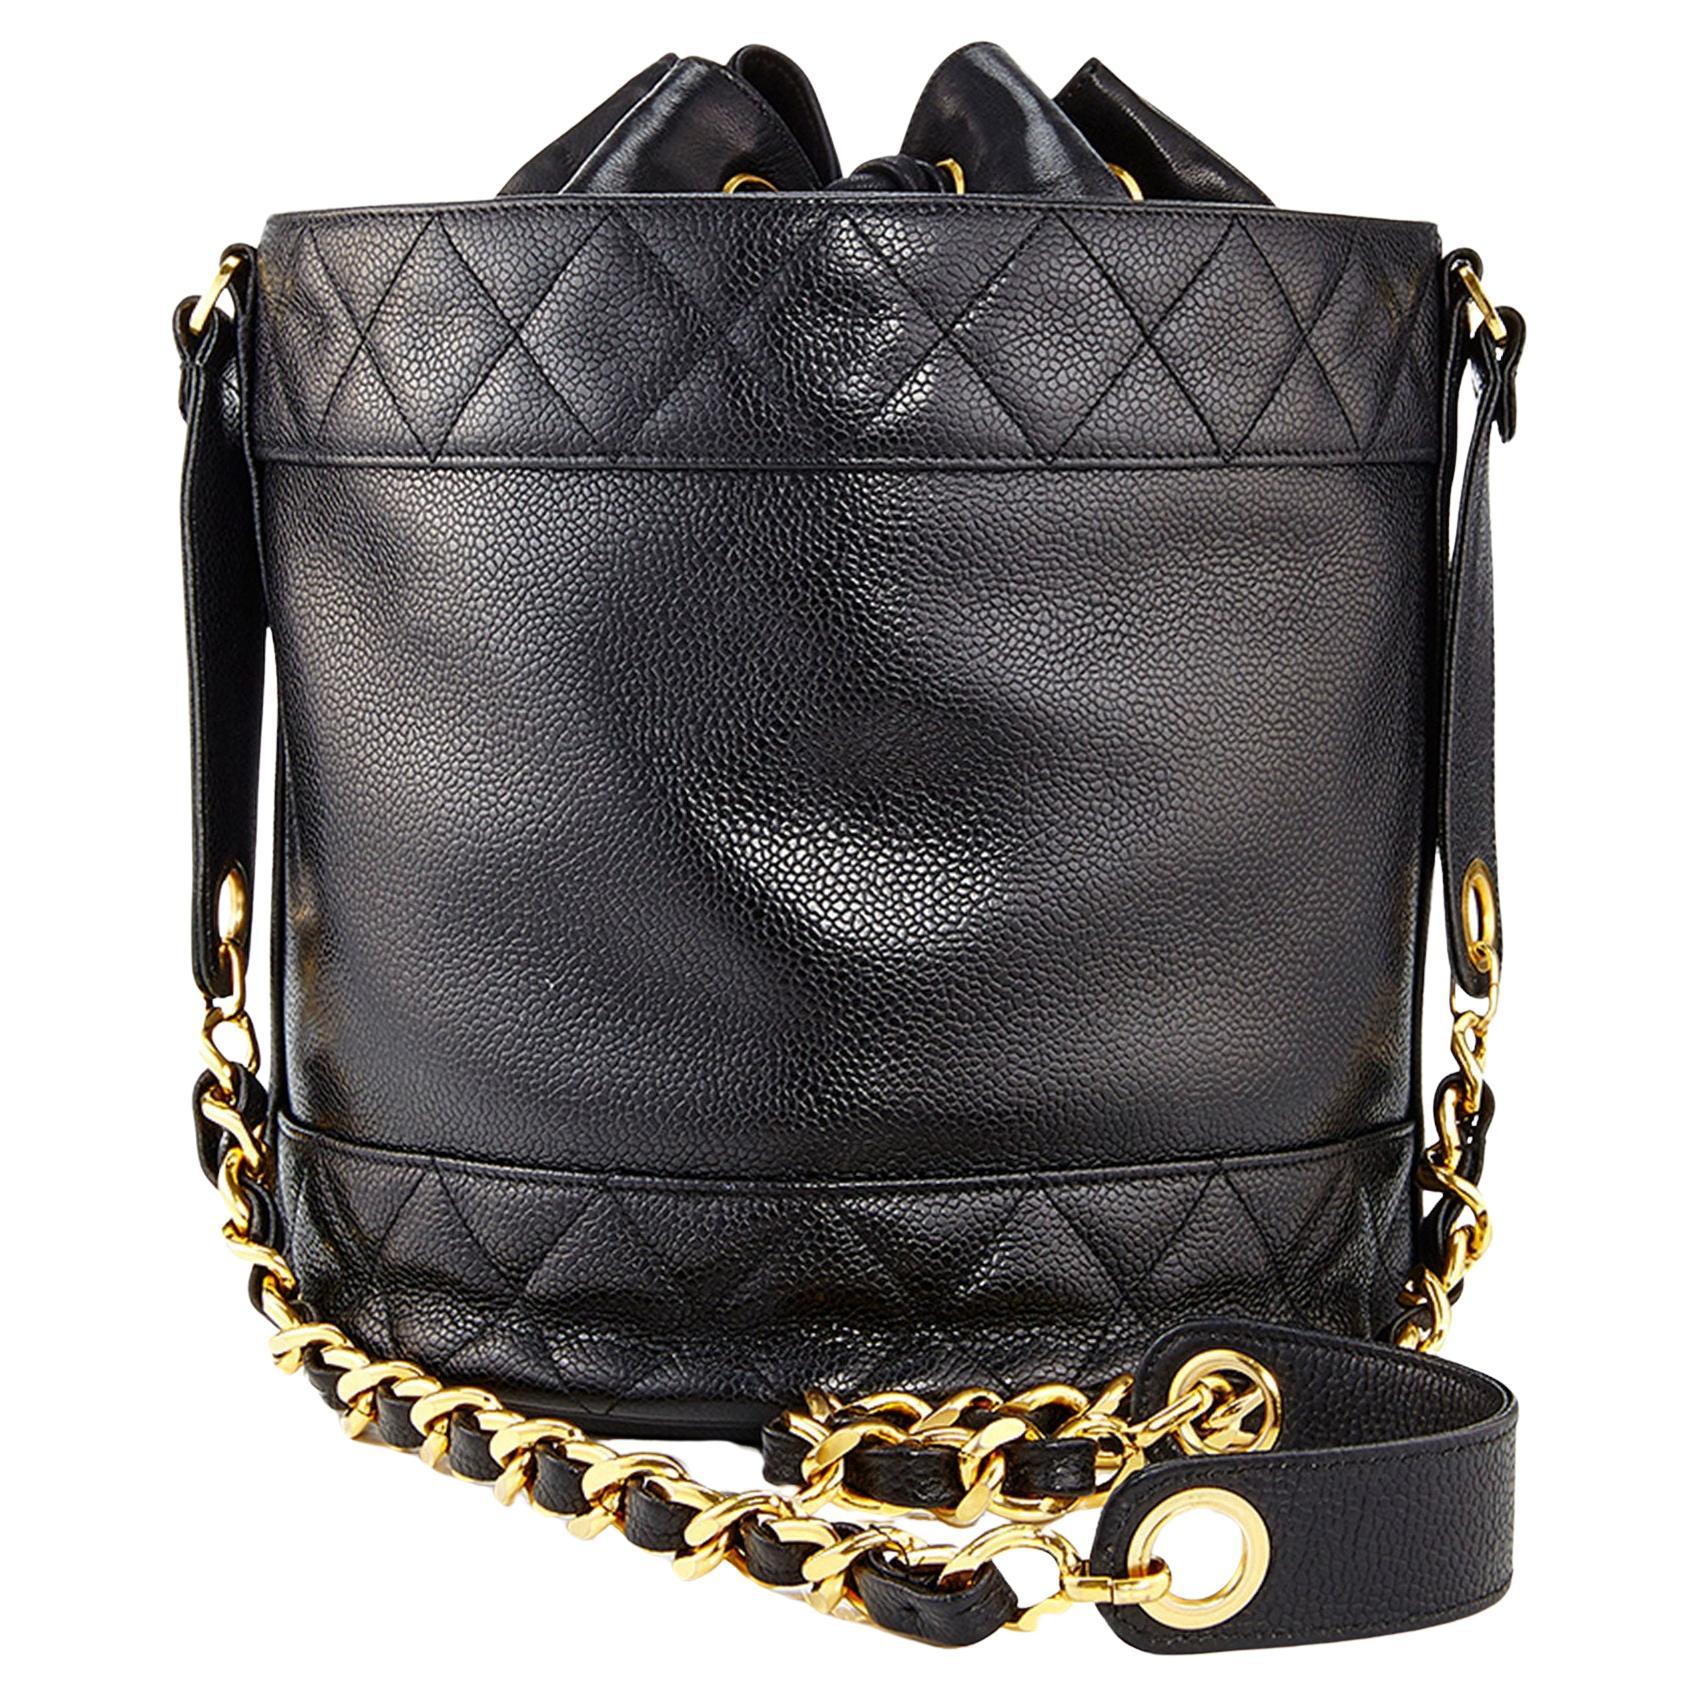 Chanel 1991 Black Caviar Leather Vintage Drawstring Drum Shaped Shoulder Bag For Sale